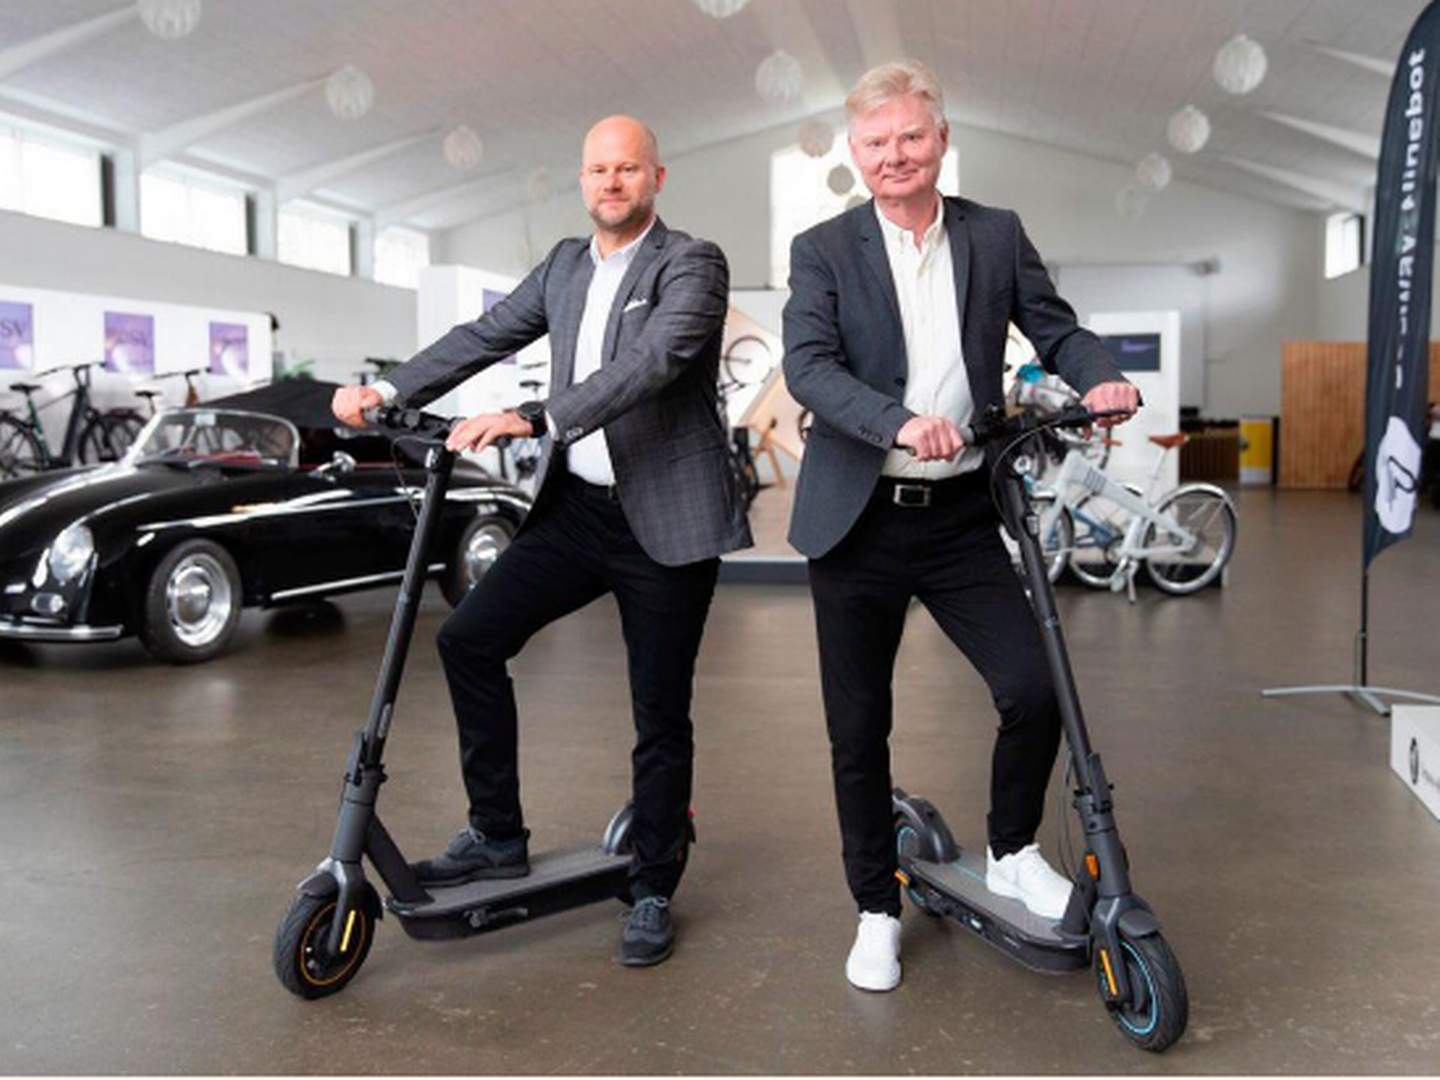 Adm. direktør Claus Tange og stifter Allan Witt med to af de elløbehjul, der som kategori har været særligt hårdt ramt på salget i det forgangne år. | Foto: Witt Hvidevarer/Pr